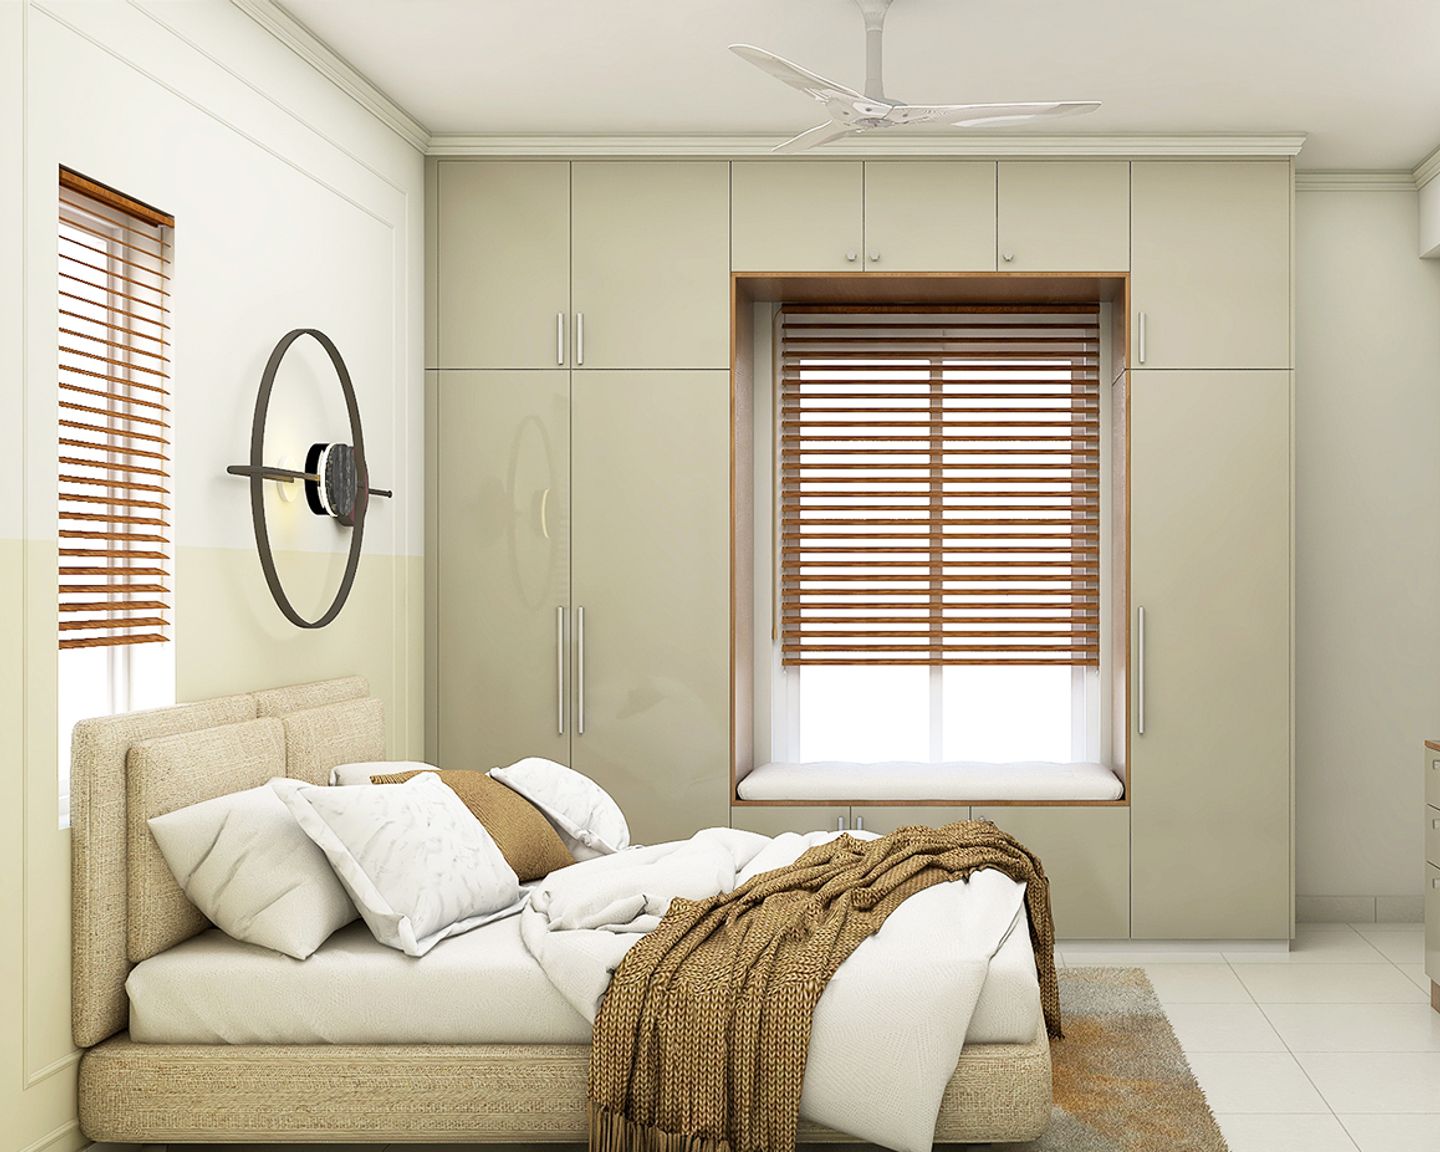 2-Door Swing Wardrobe Design For Bedrooms - Livspace